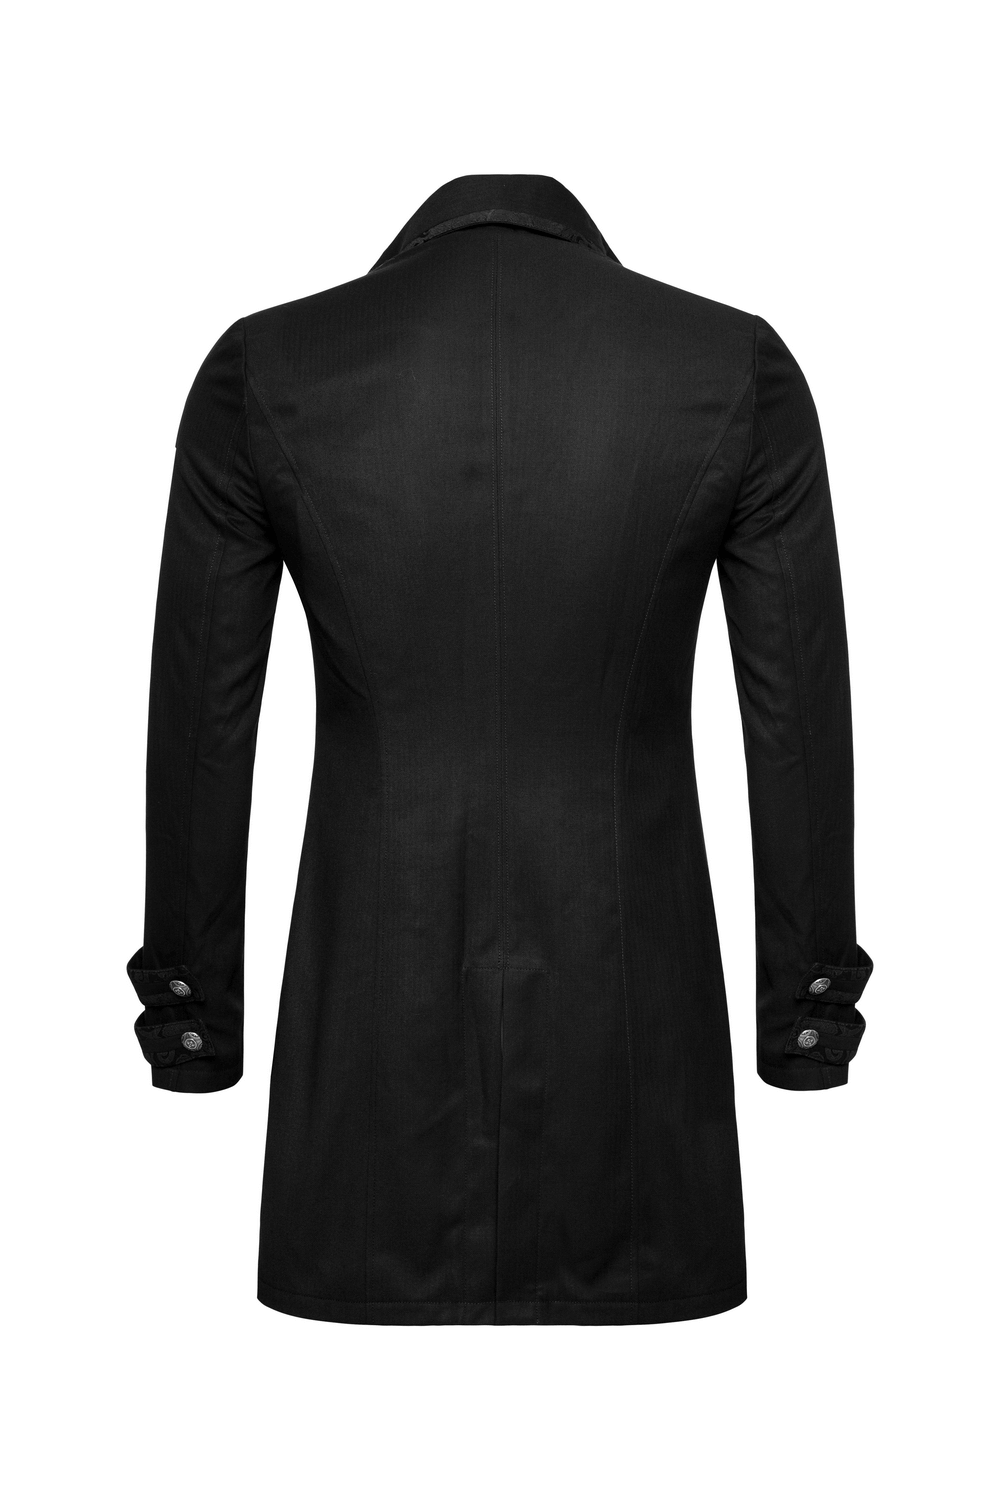 Victorian Tailcoat Gothic Jacket - Dark Elegance - HARD'N'HEAVY